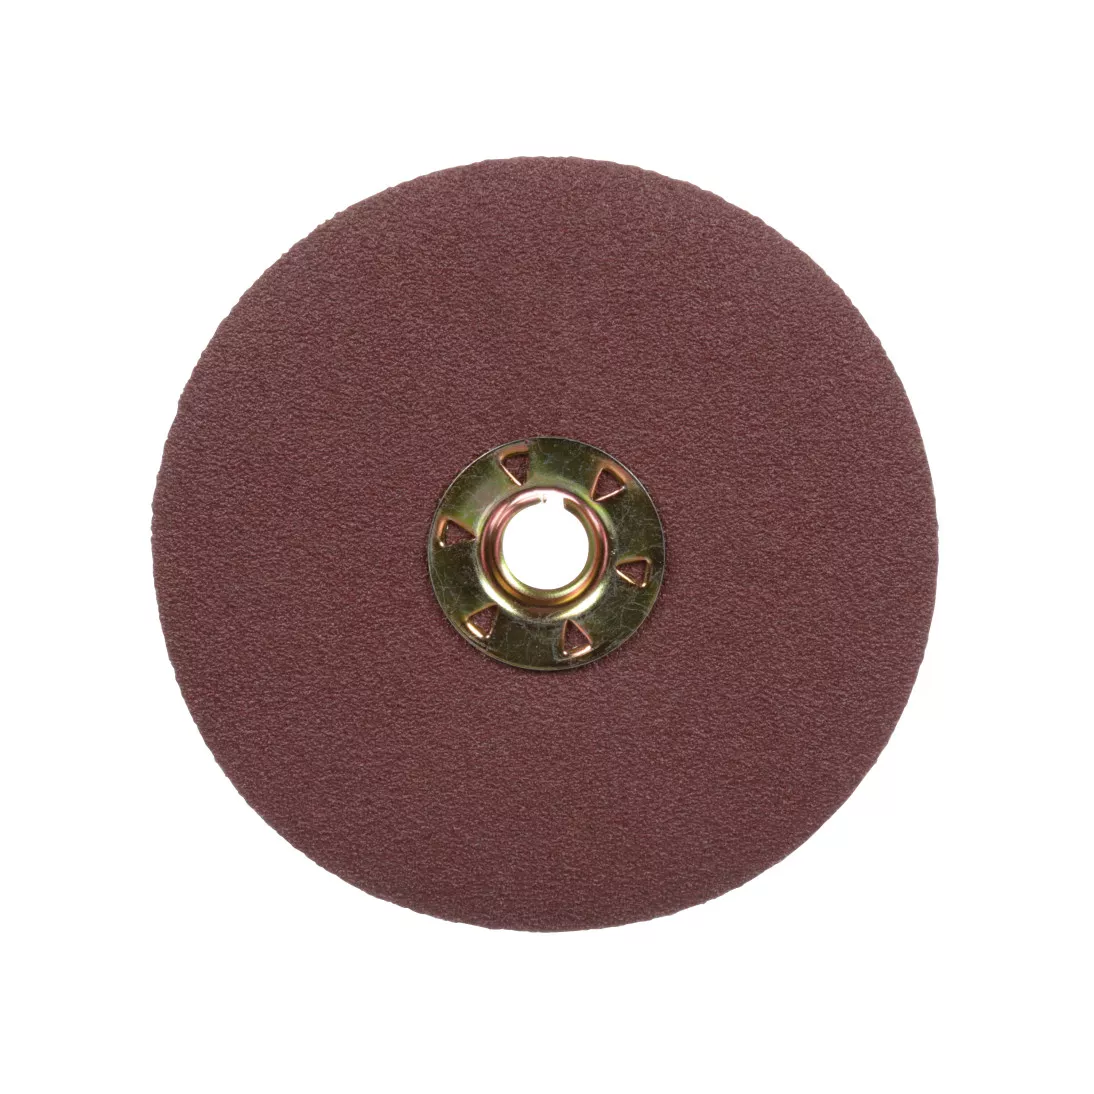 Standard Abrasives™ Quick Change Aluminum Oxide Resin Fiber Disc,
531105, 60, TSM, Brown, 5 in, Die QS500XM, 25/inner, 100/case